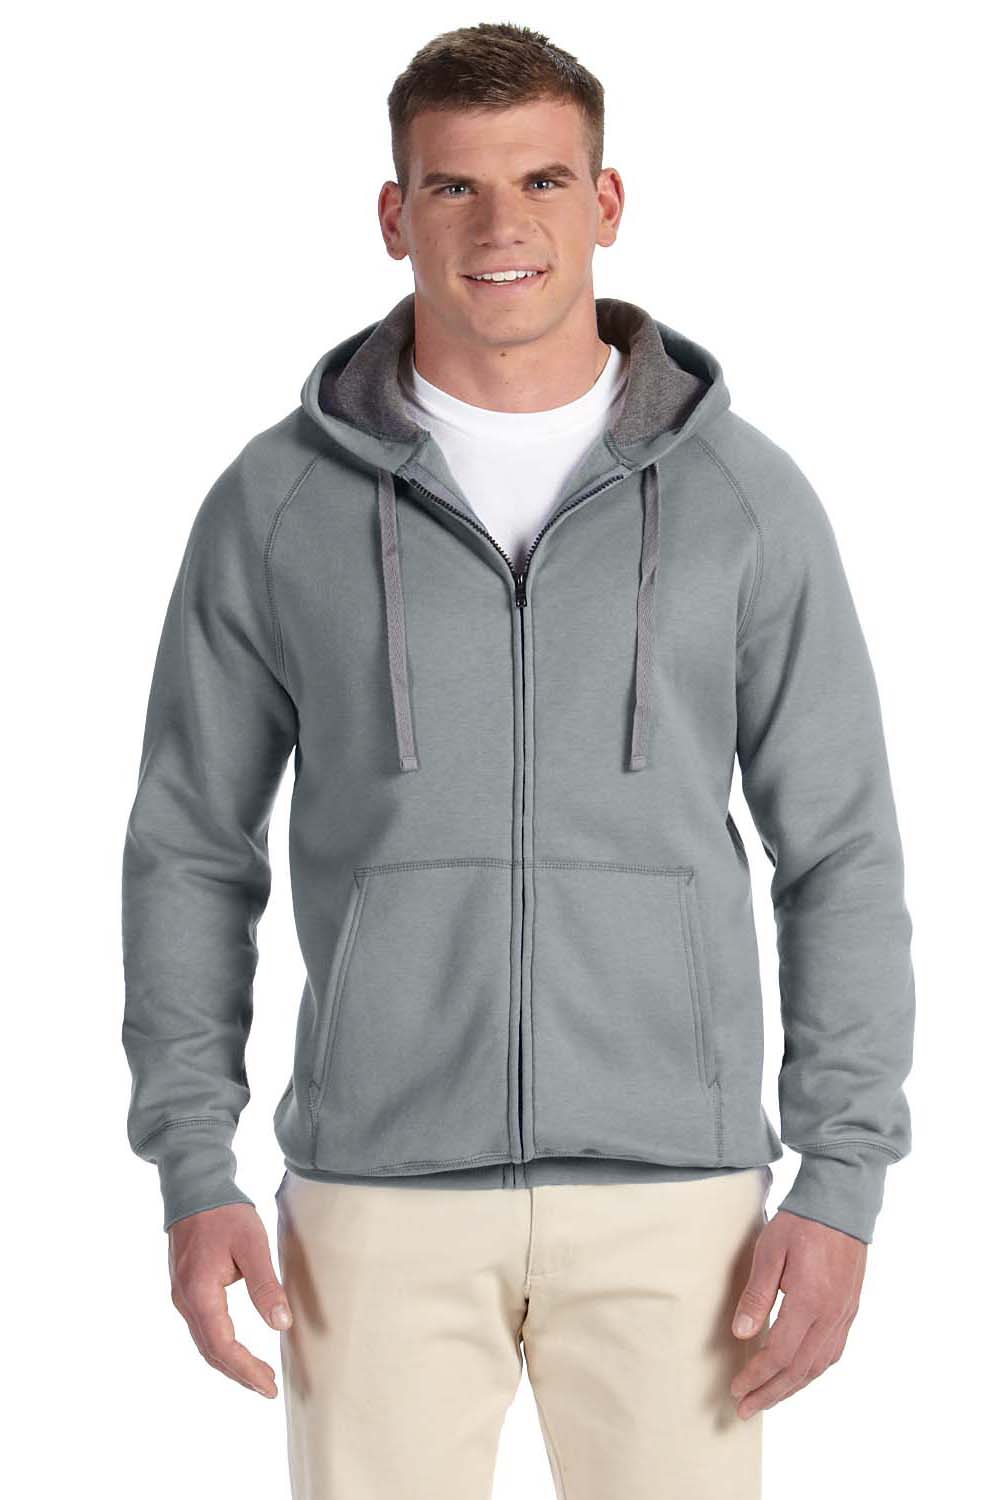 Hanes N280 Mens Nano Fleece Full Zip Hooded Sweatshirt Hoodie Vintage Grey Front